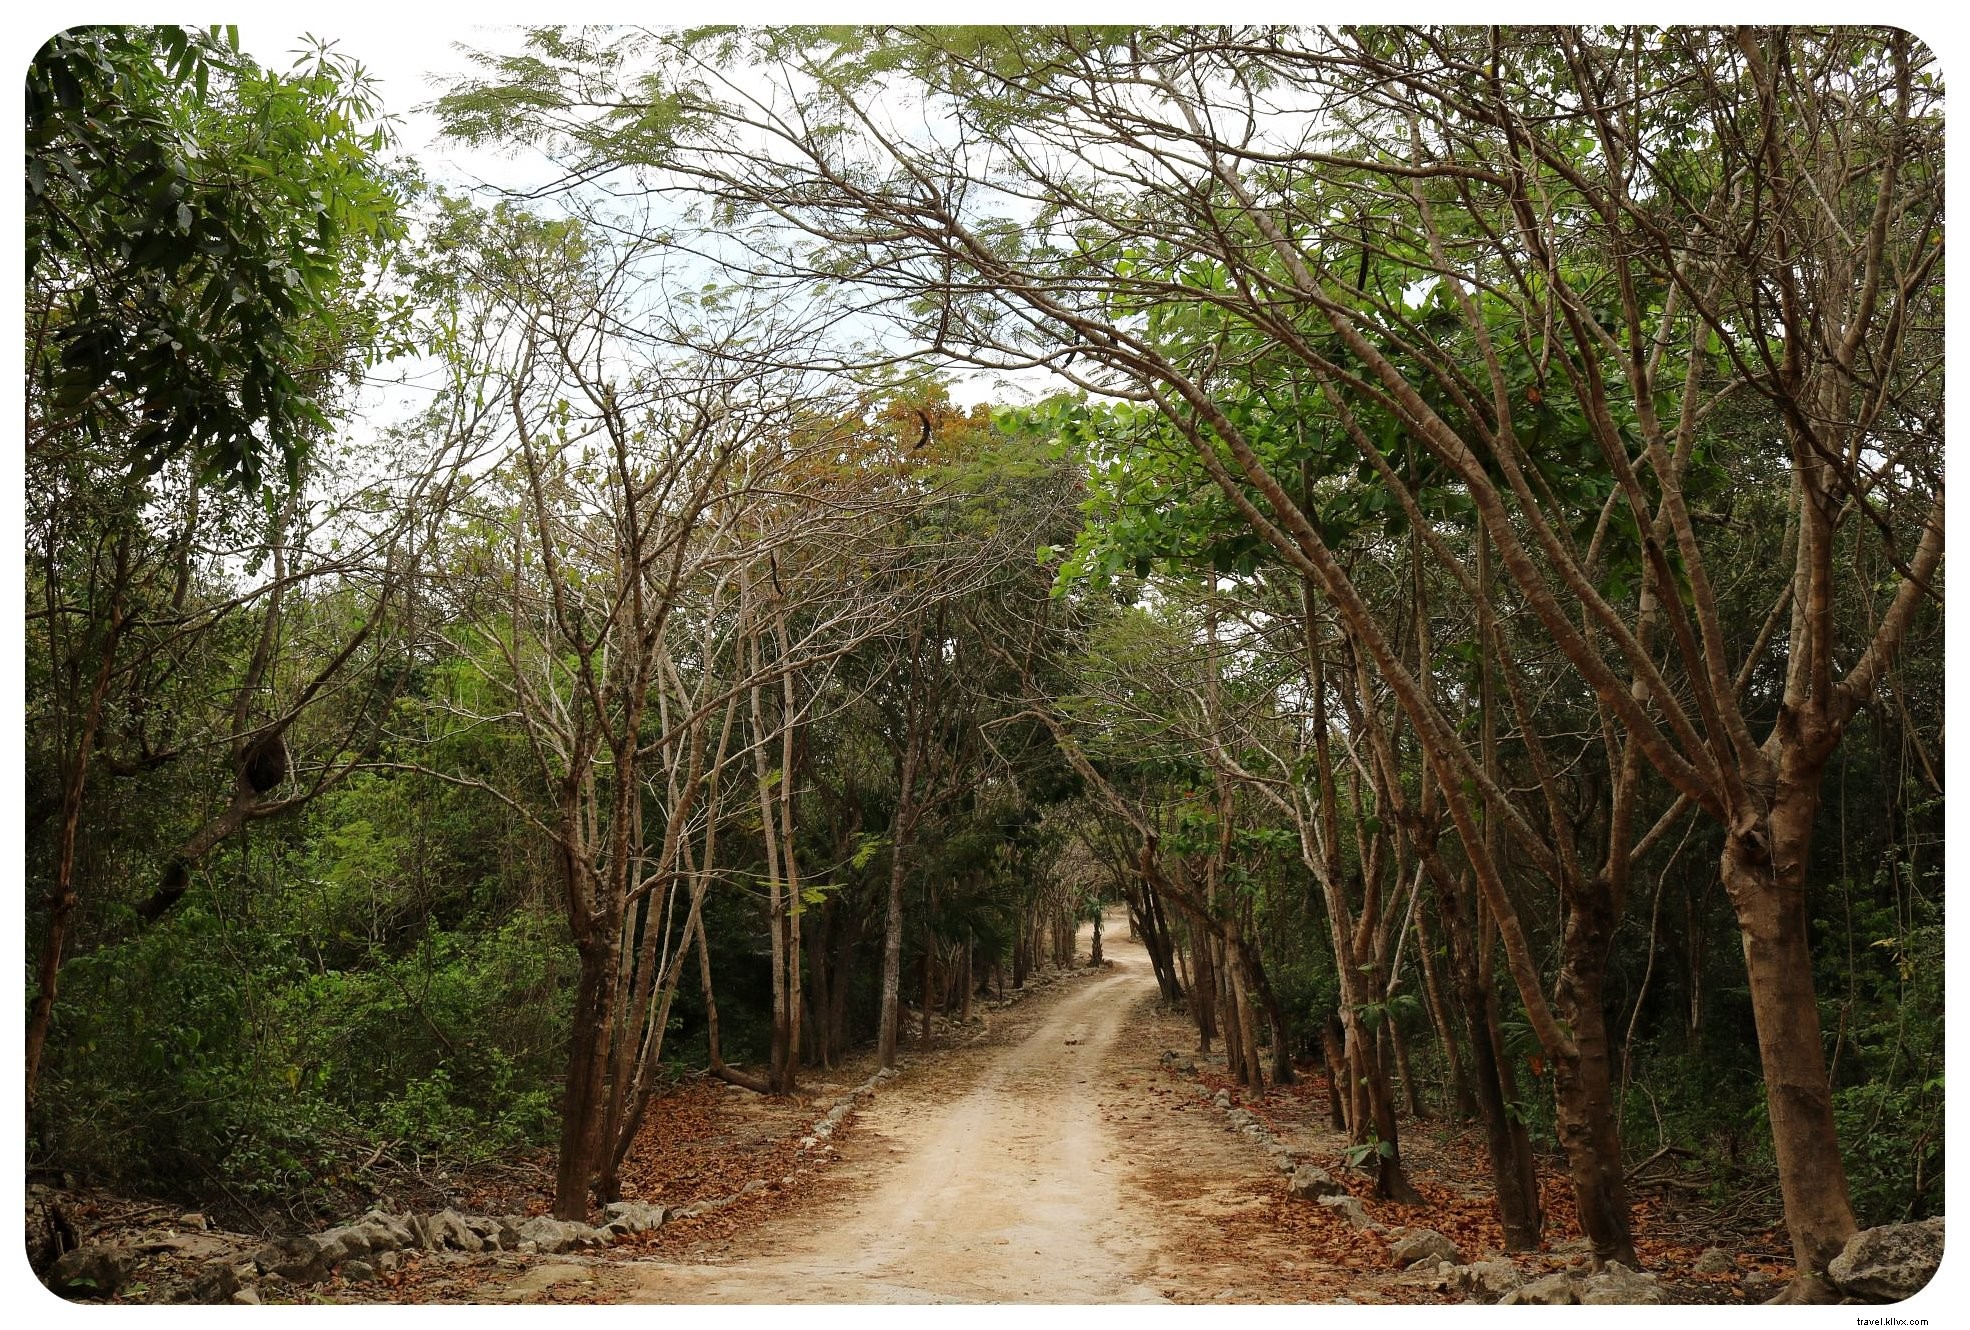 Cenote, Pantai &Reruntuhan Maya:Perjalanan Darat Yucatan Berbahan Bakar Taco